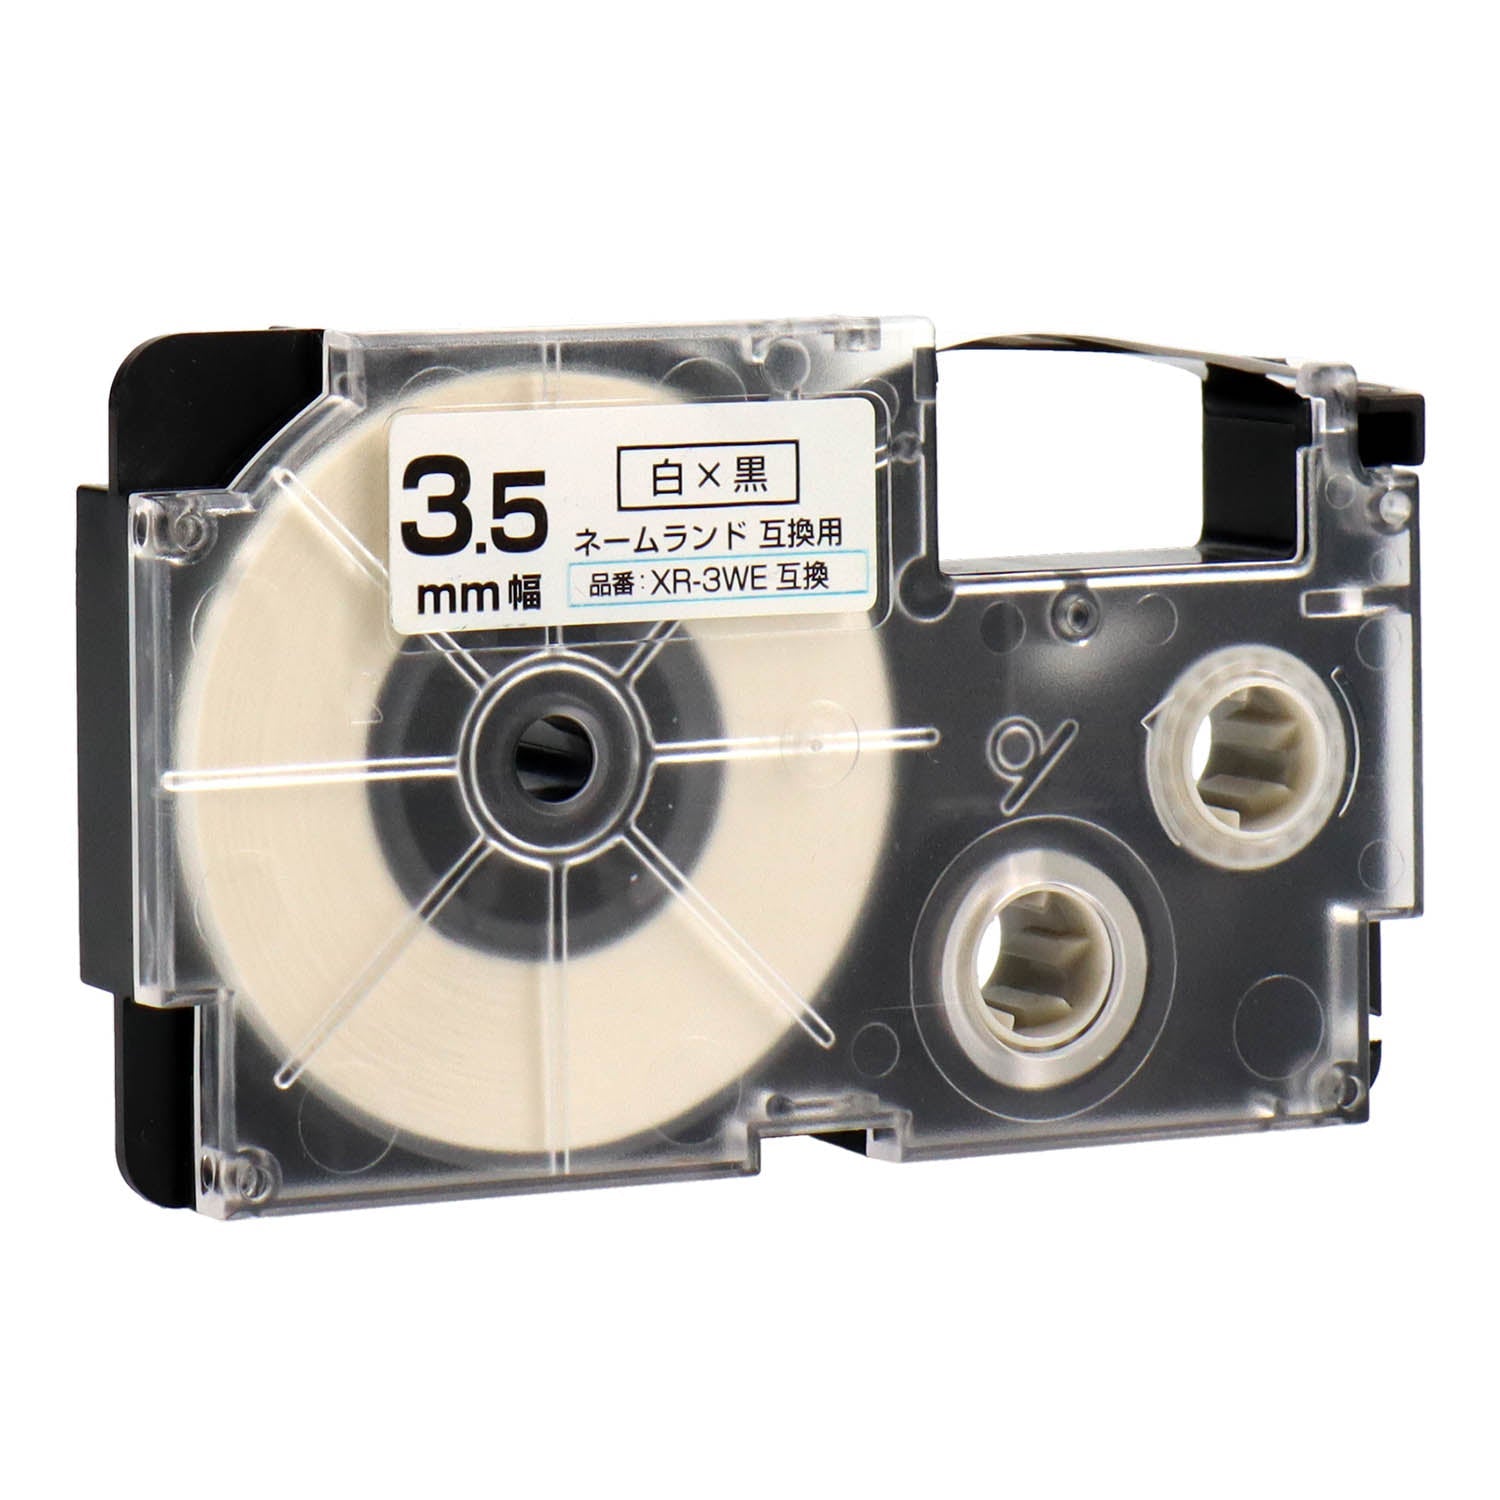 ネームランド用互換テープカートリッジ 白×黒文字 3.5mm